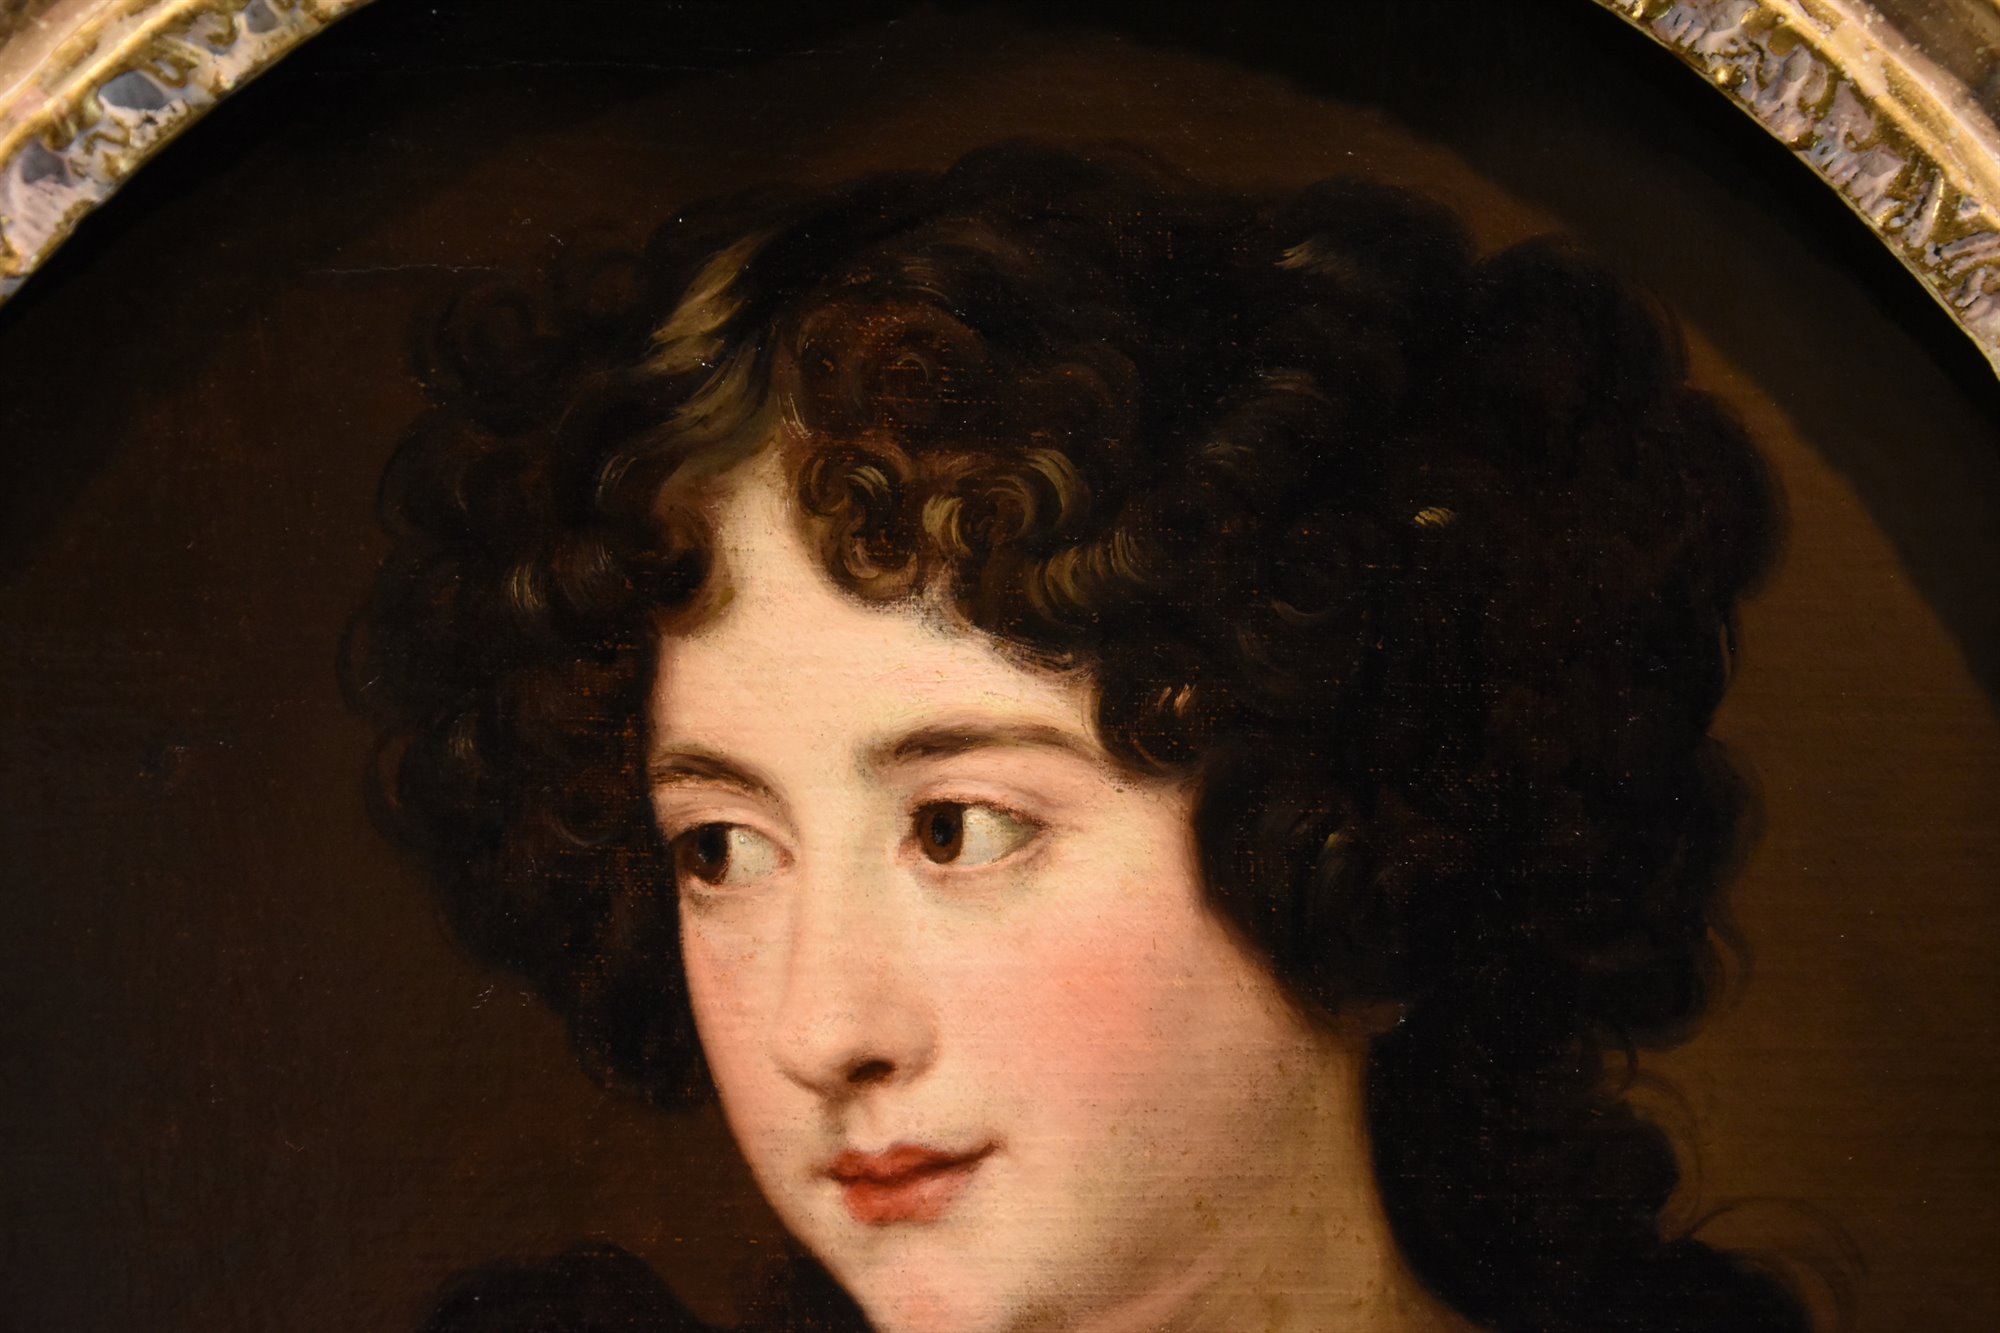 Ritratto della giovane Ortensia Mancini, duchessa di La Meilleraye (Roma 1646 – Chelsea 1699)